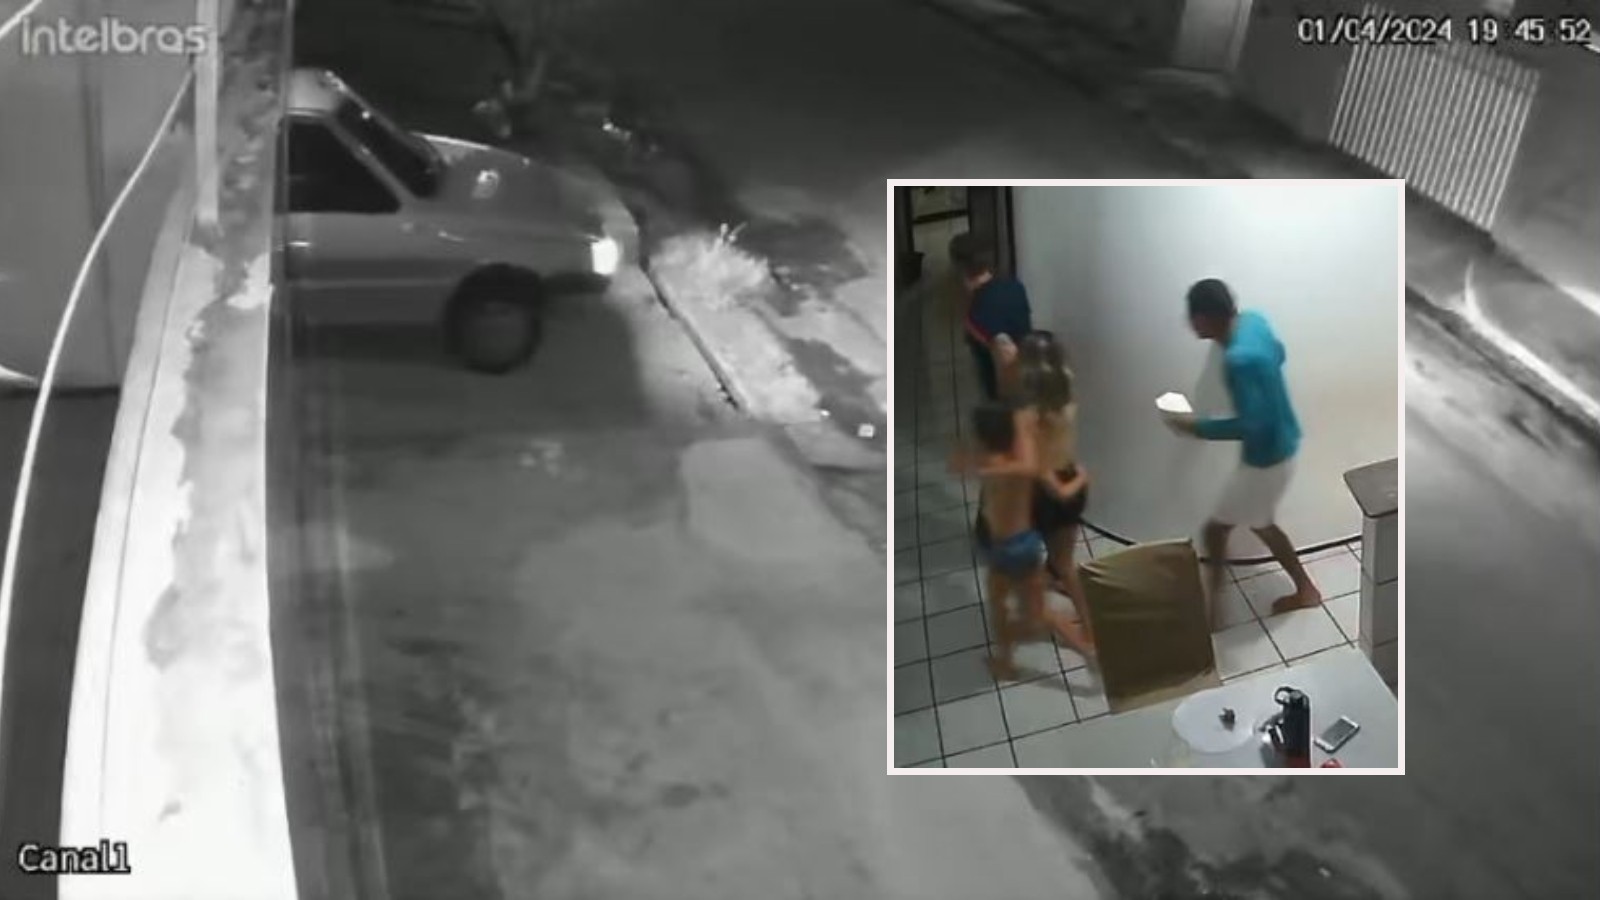 VÍDEO: Criminosos arrombam portão com carro e fazem mulher e crianças reféns em Fortaleza